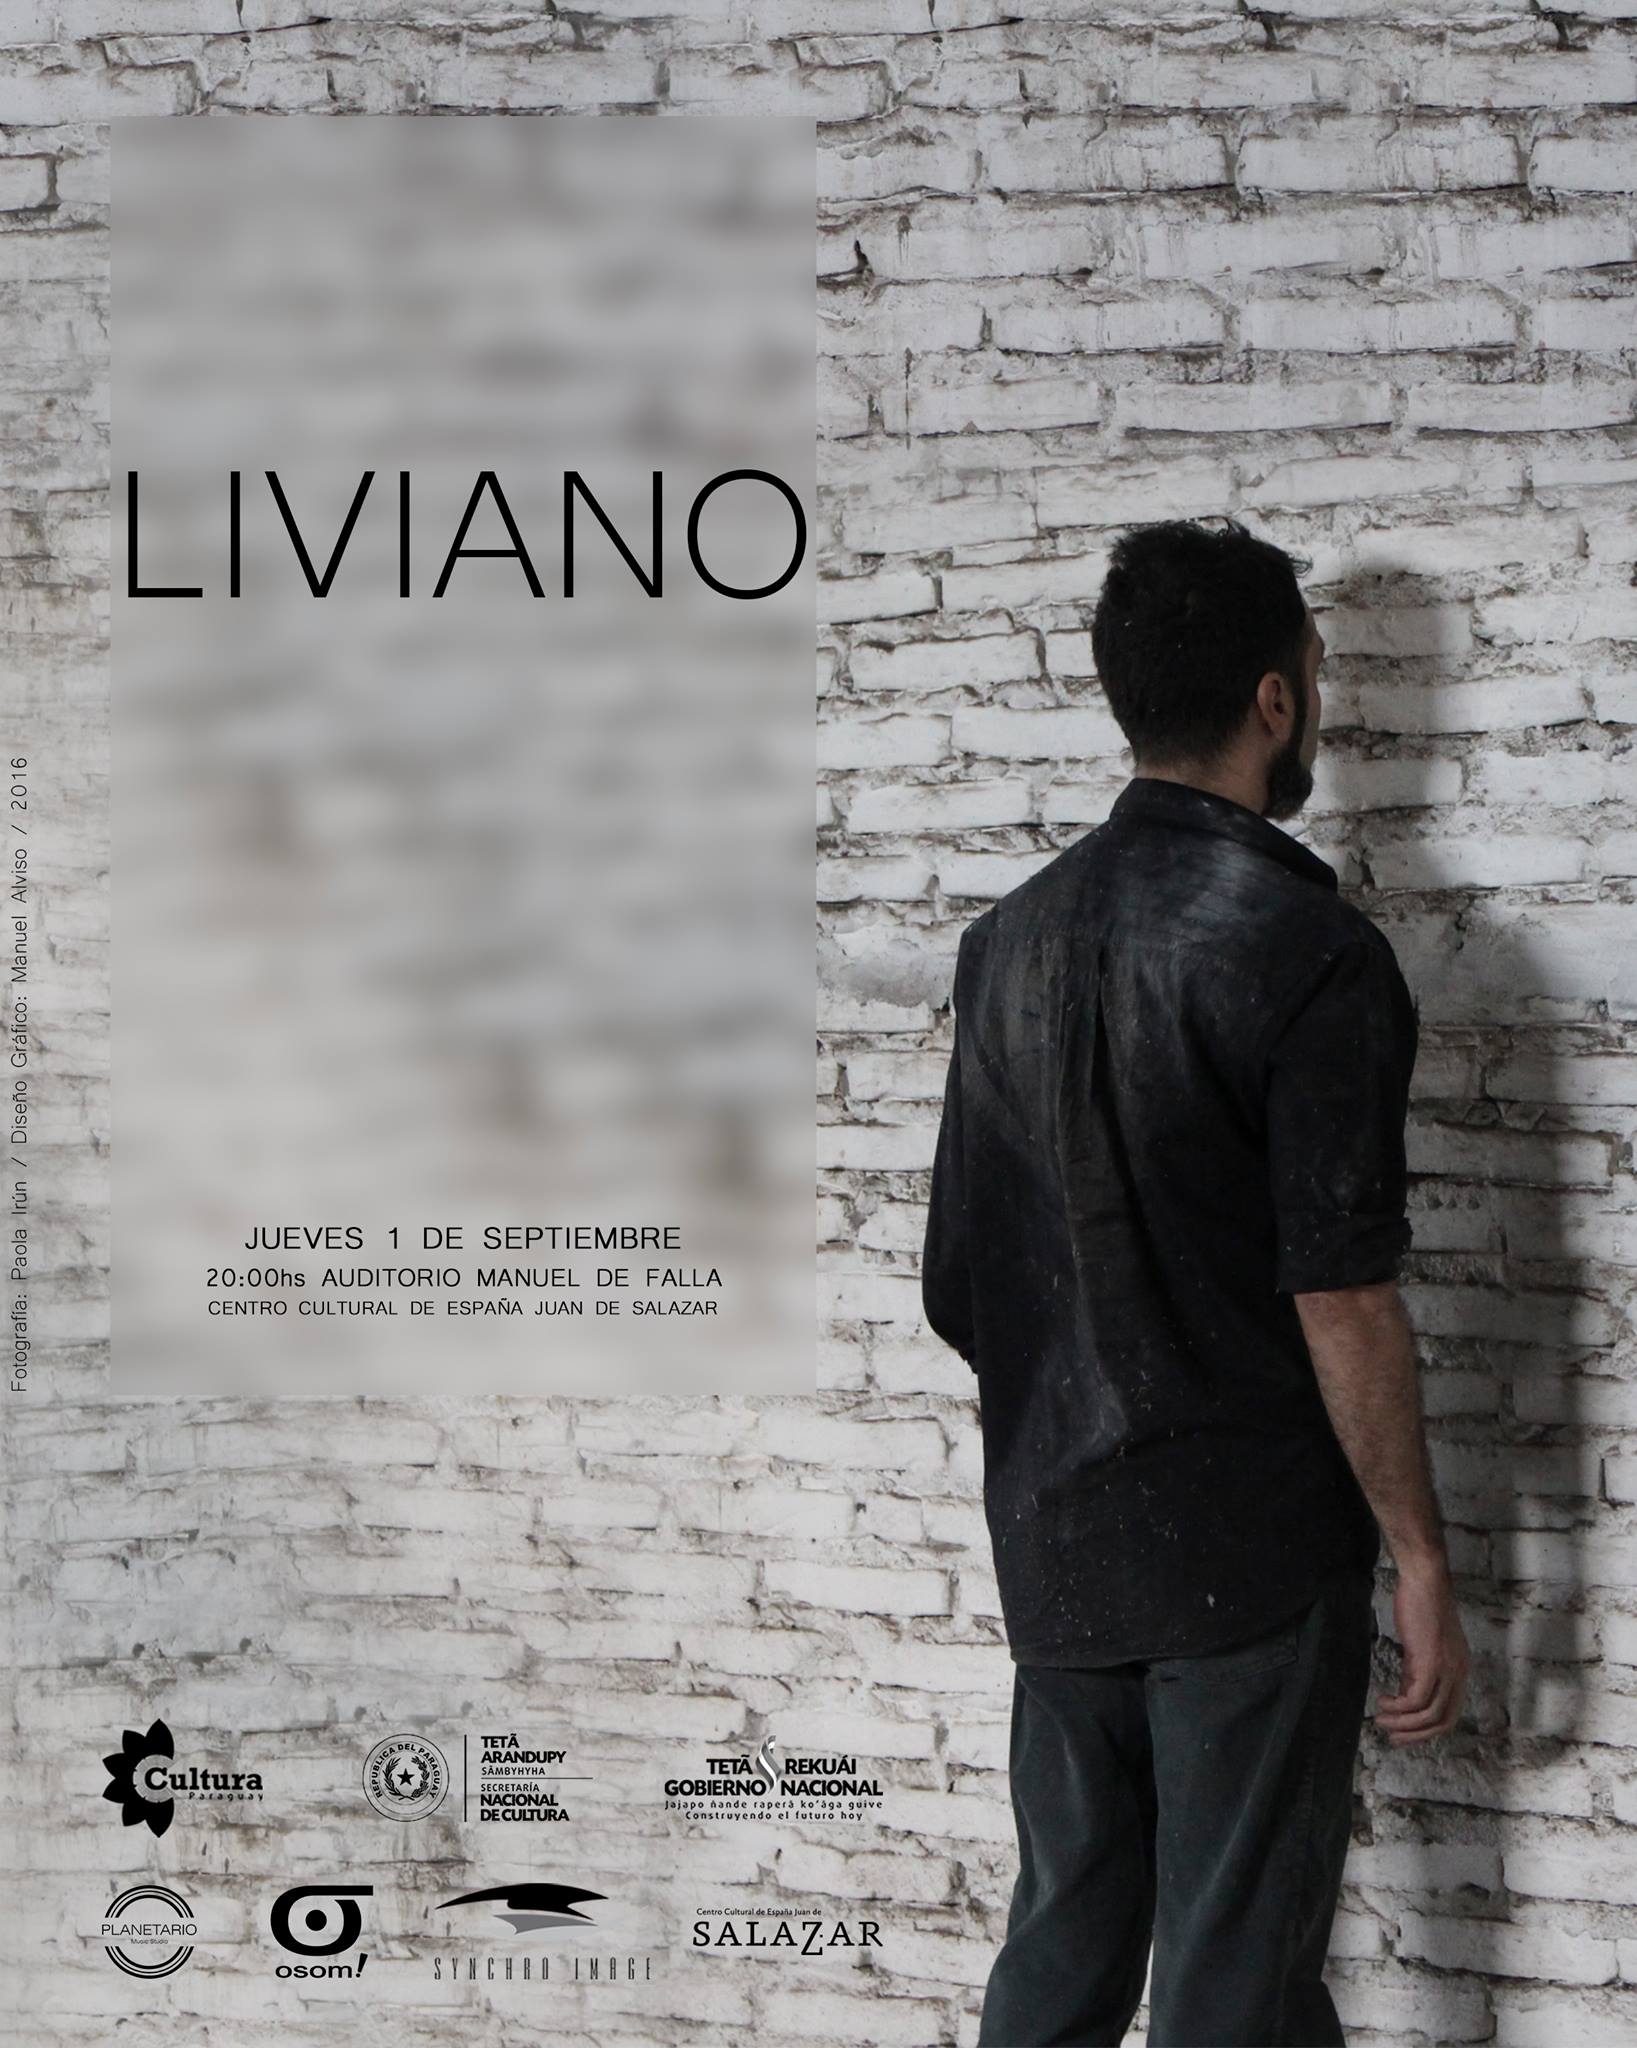 LIVIANO  “Un hombre… un espacio tomado… y una decisión postergada” imagen